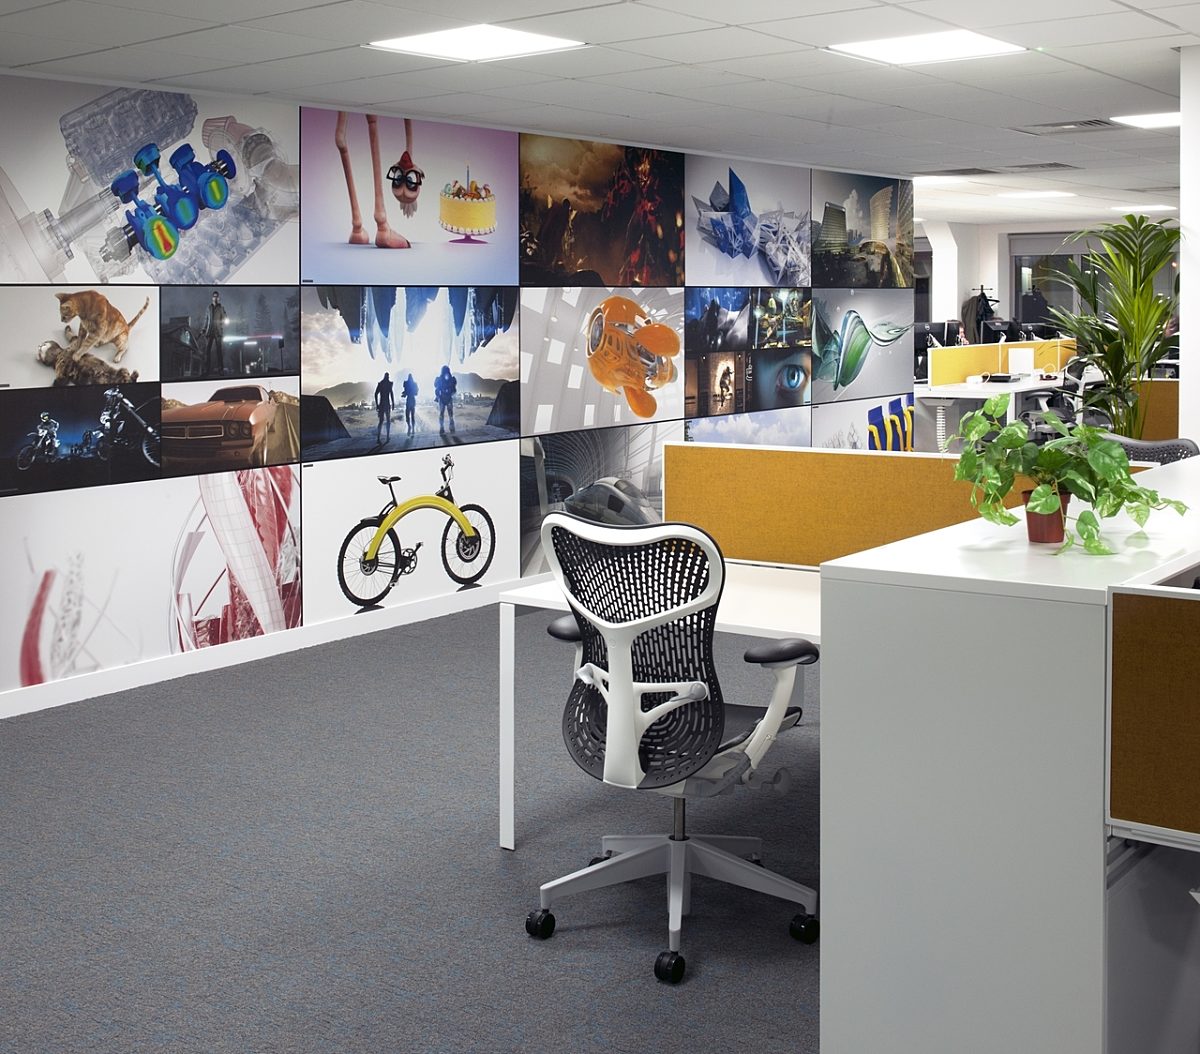 Autodesk organised workplace